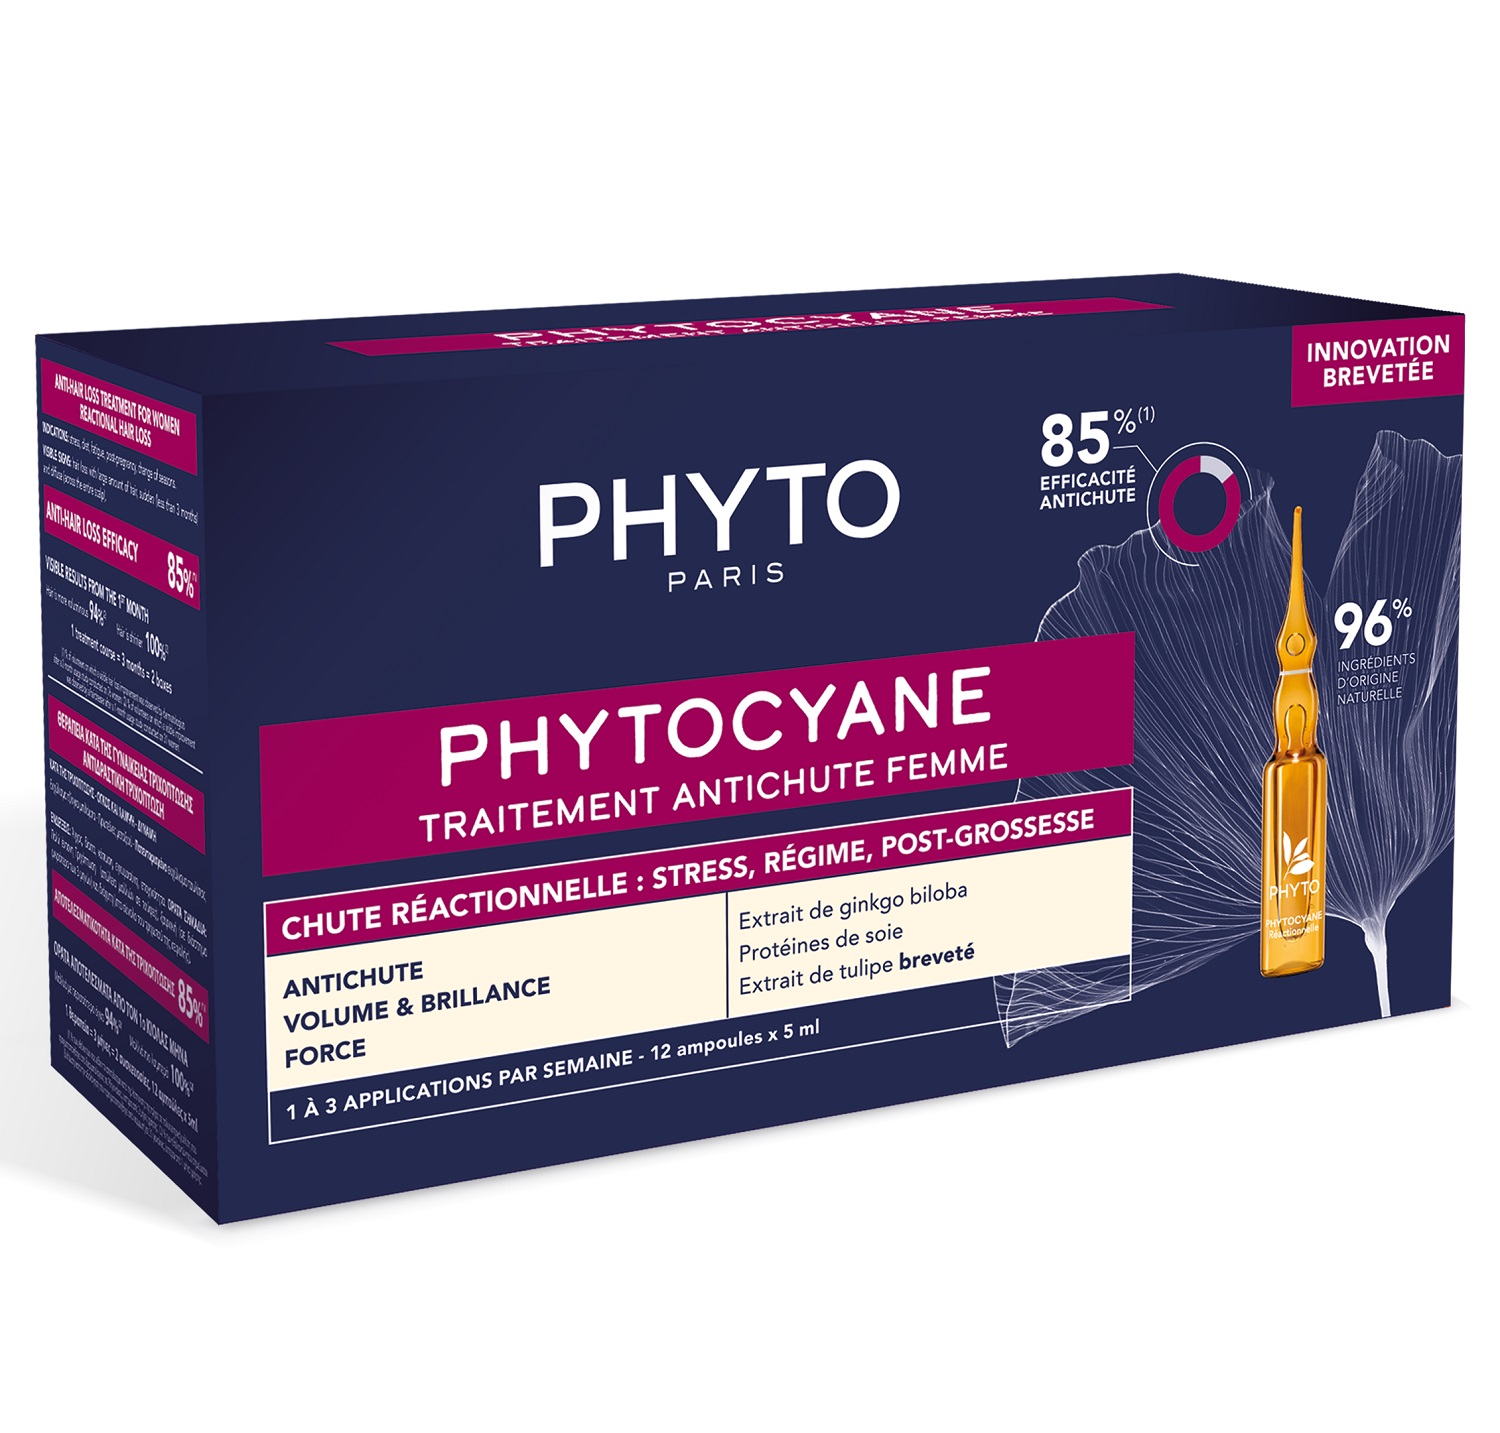 Phyto Сыворотка против выпадения волос для женщин, 12 ампул х 5 мл (Phyto, Phytocyane) цена и фото